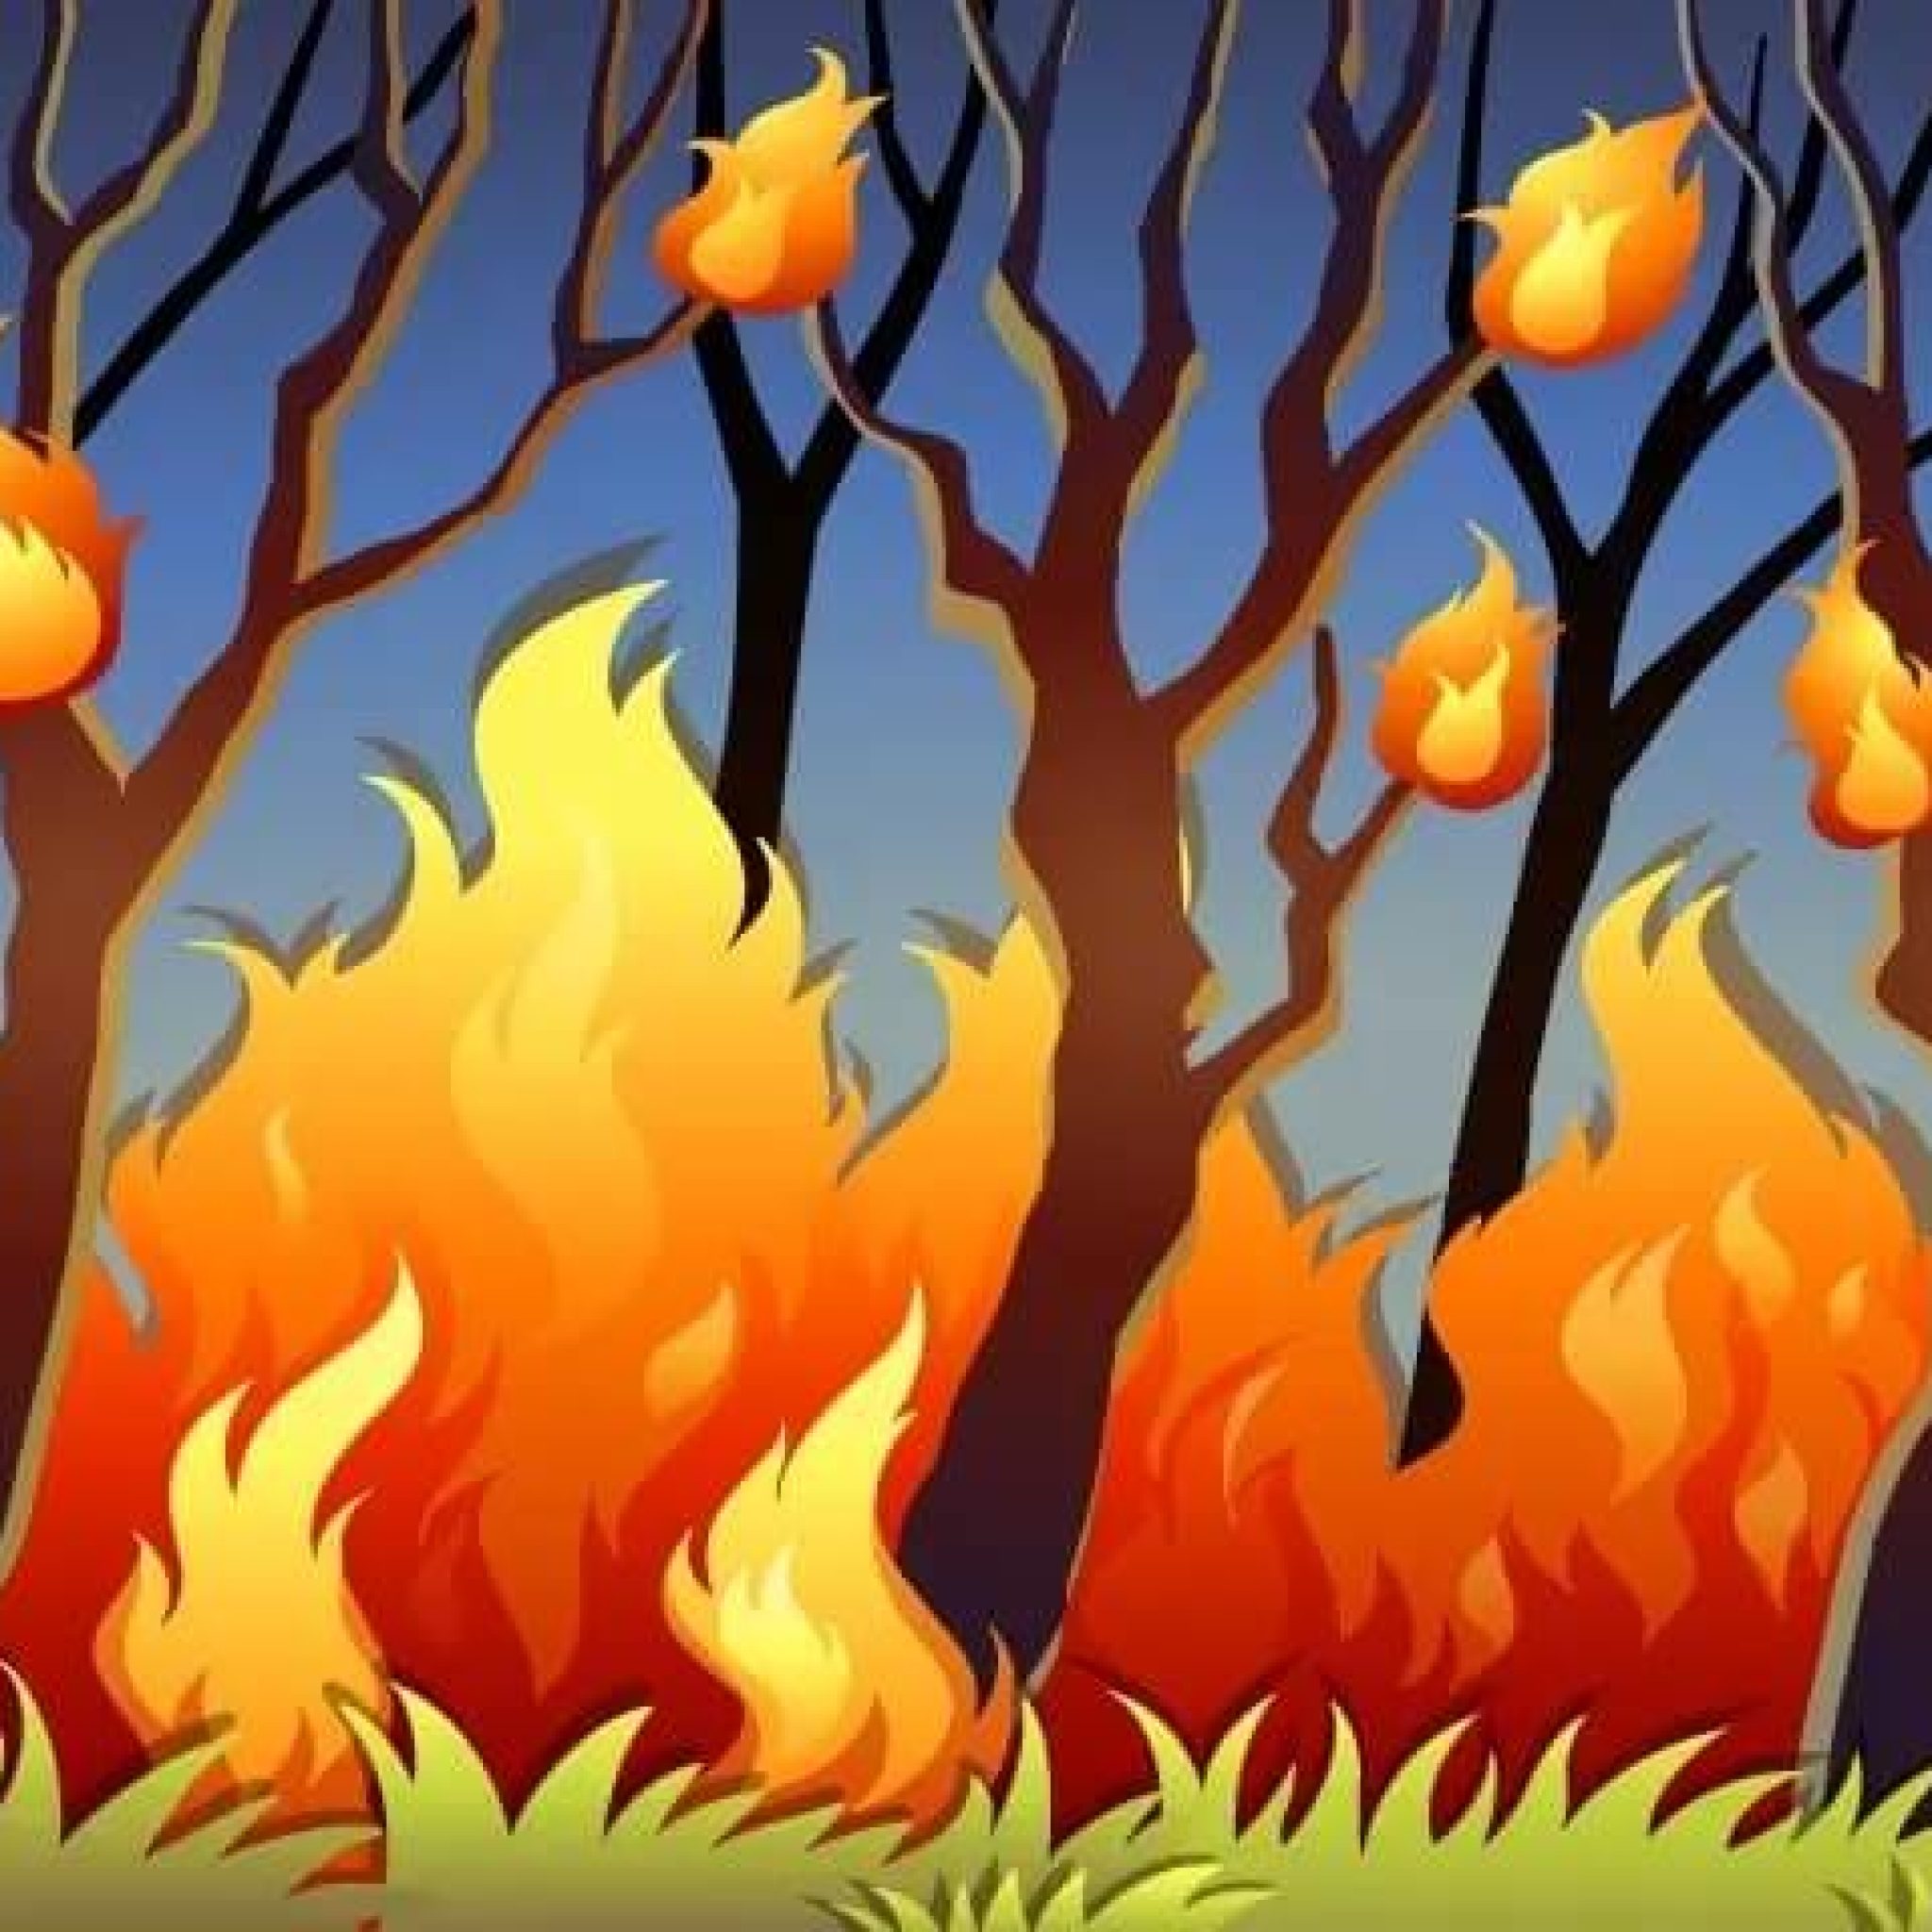 Пожар в лесу мультяшный